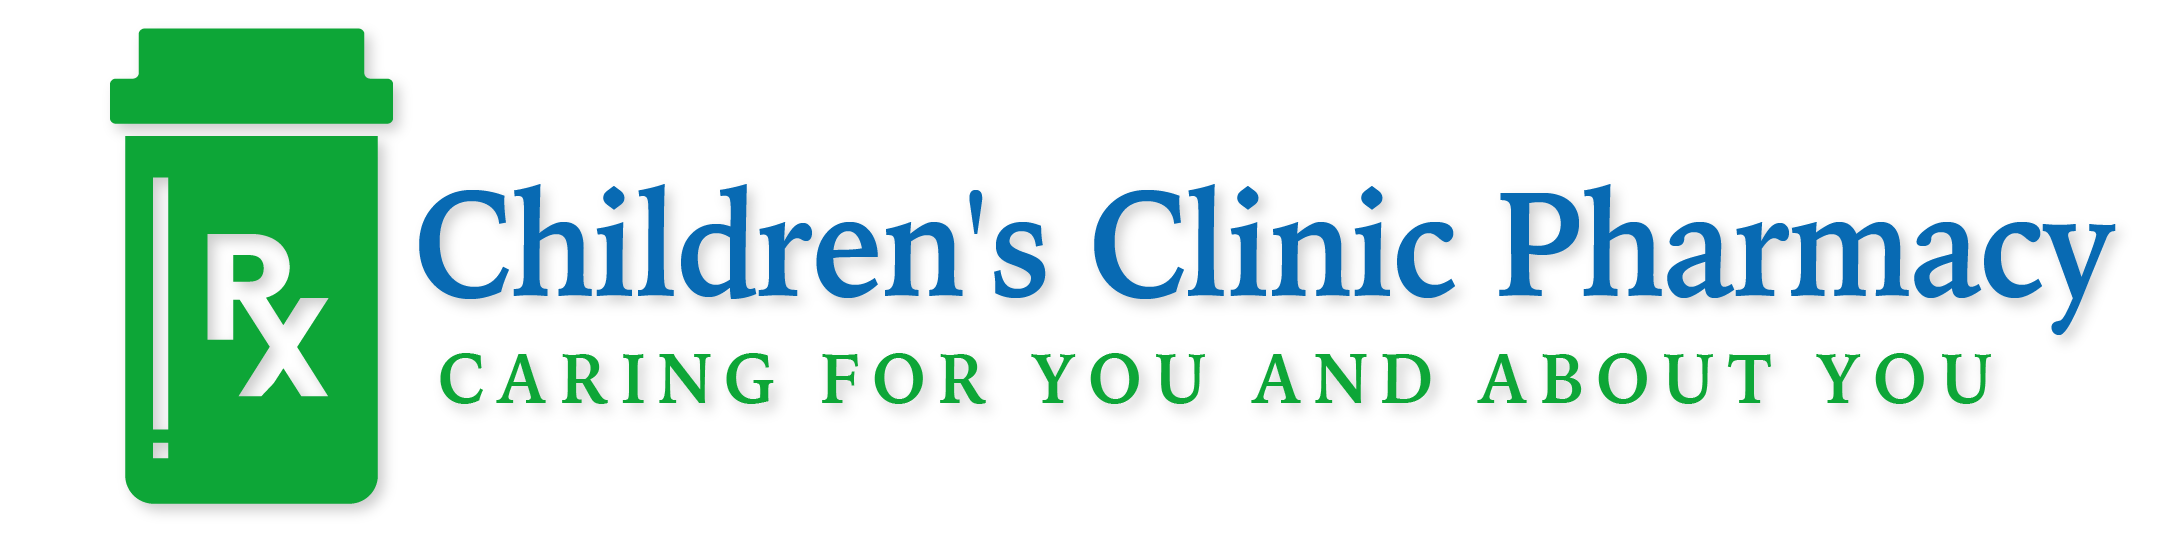 Children's Clinic Pharmacy